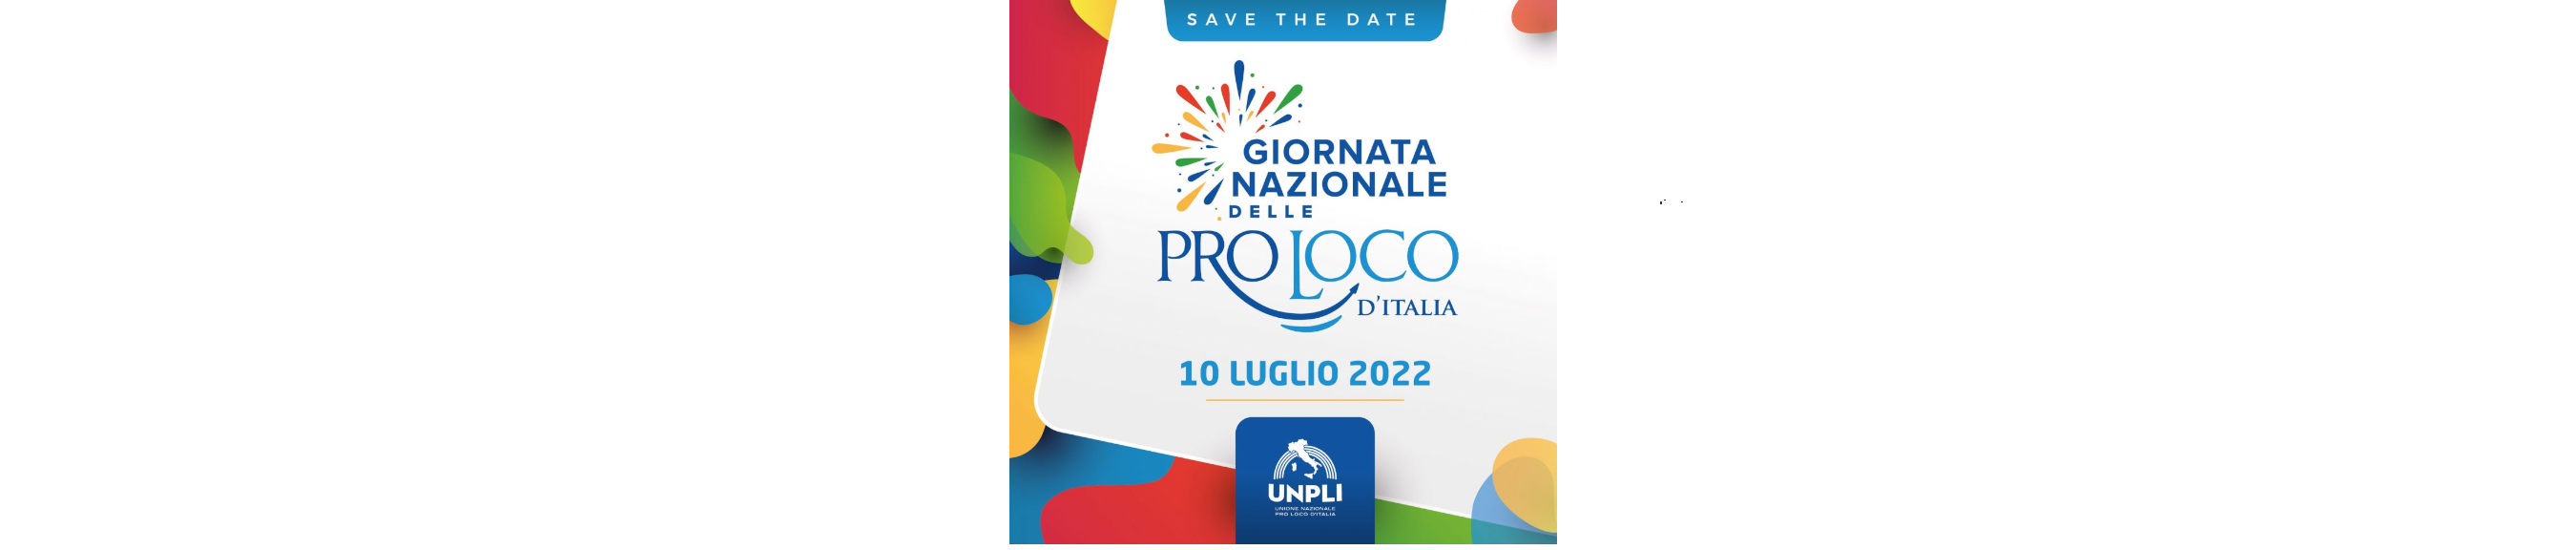 Le Pro Loco d’Italia Festeggiano sul Lago Maggiore la loro Giornata Nazionale. Arona, Novara, 10 Luglio 2022